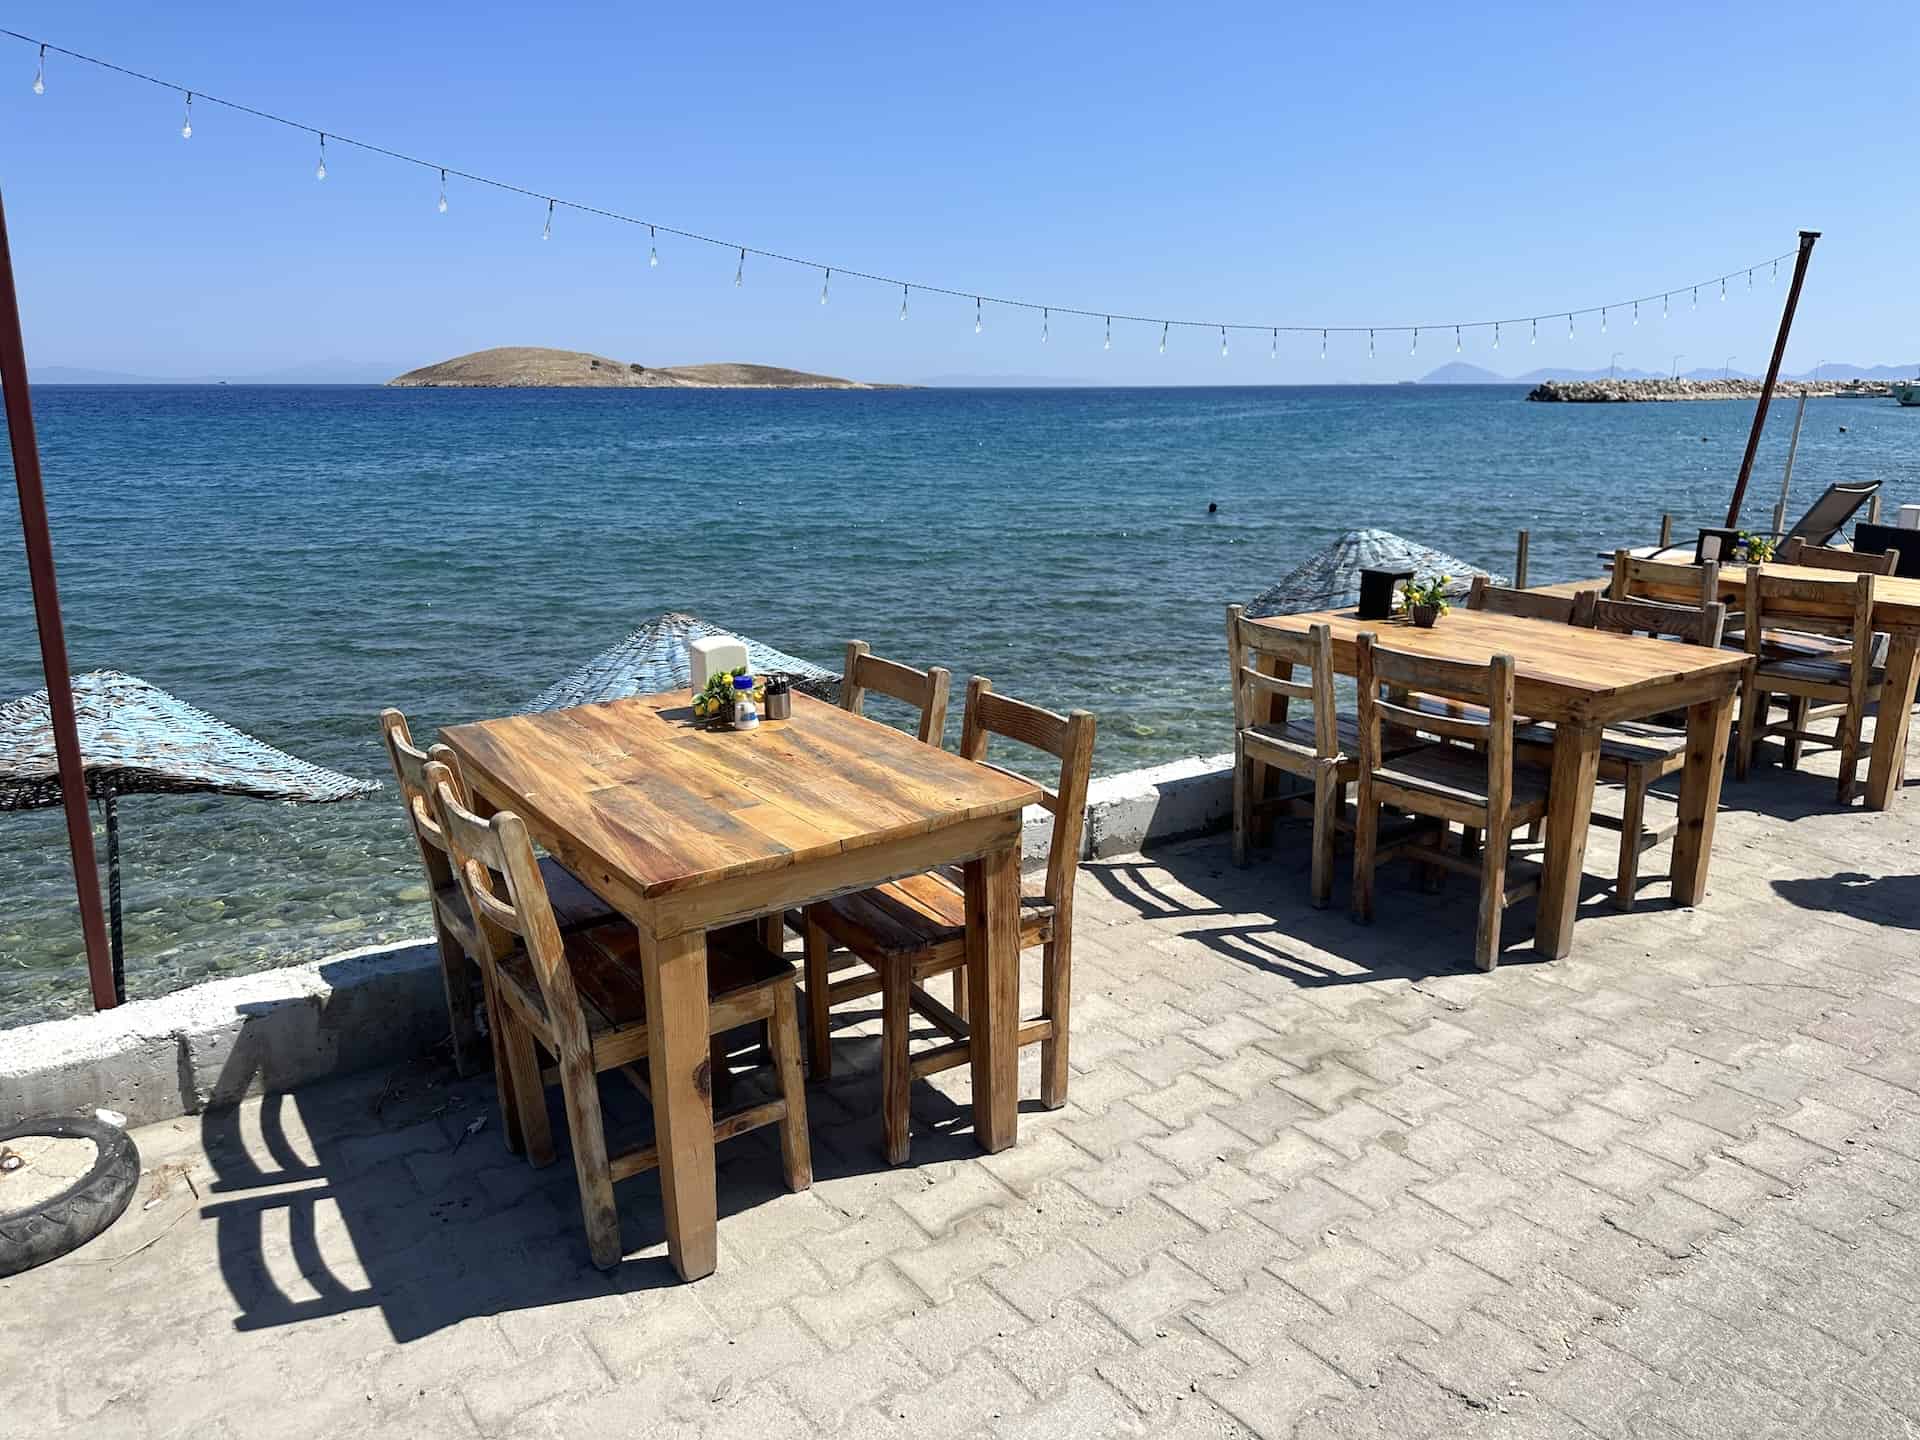 Seaside tables at Palamutbükü